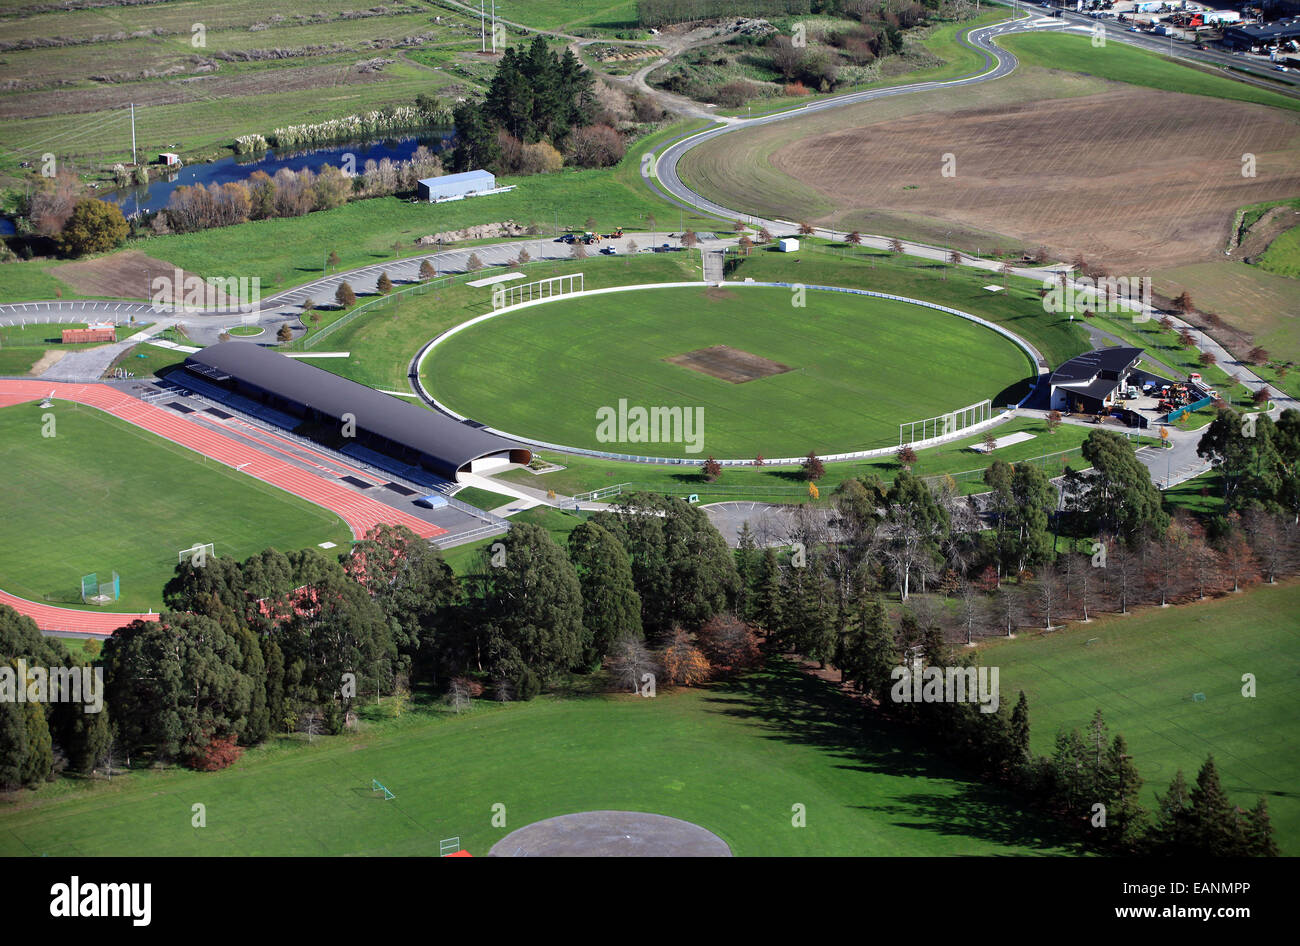 Saxton Oval Cricket pitch pour être utilisés à trois matches de la Coupe du Monde de Cricket 2015, organisée par la Nouvelle-Zélande et l'Australie Banque D'Images